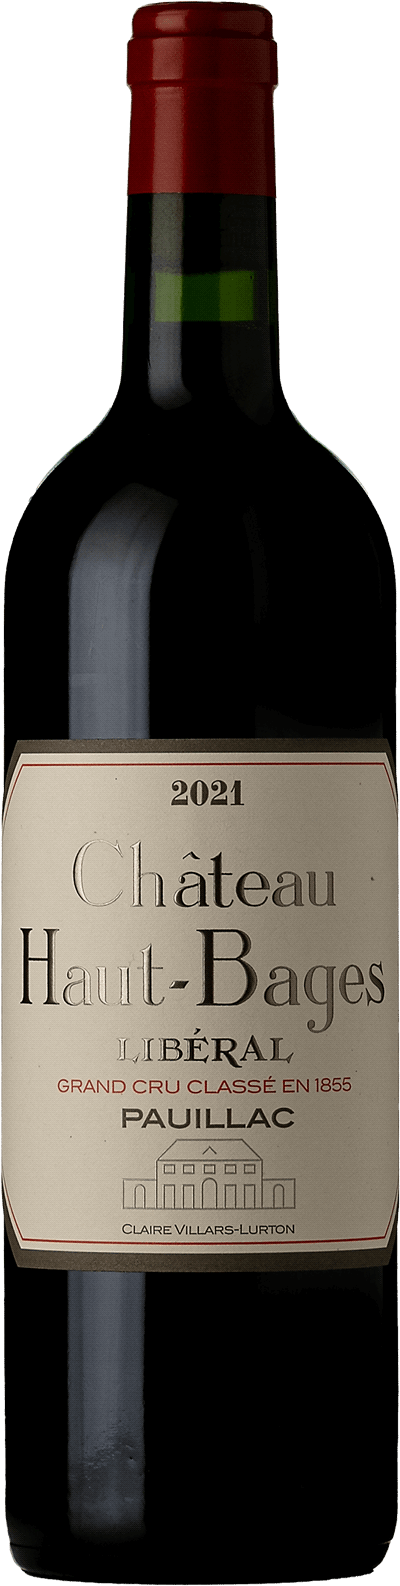 Château Haut-Bages Libéral 